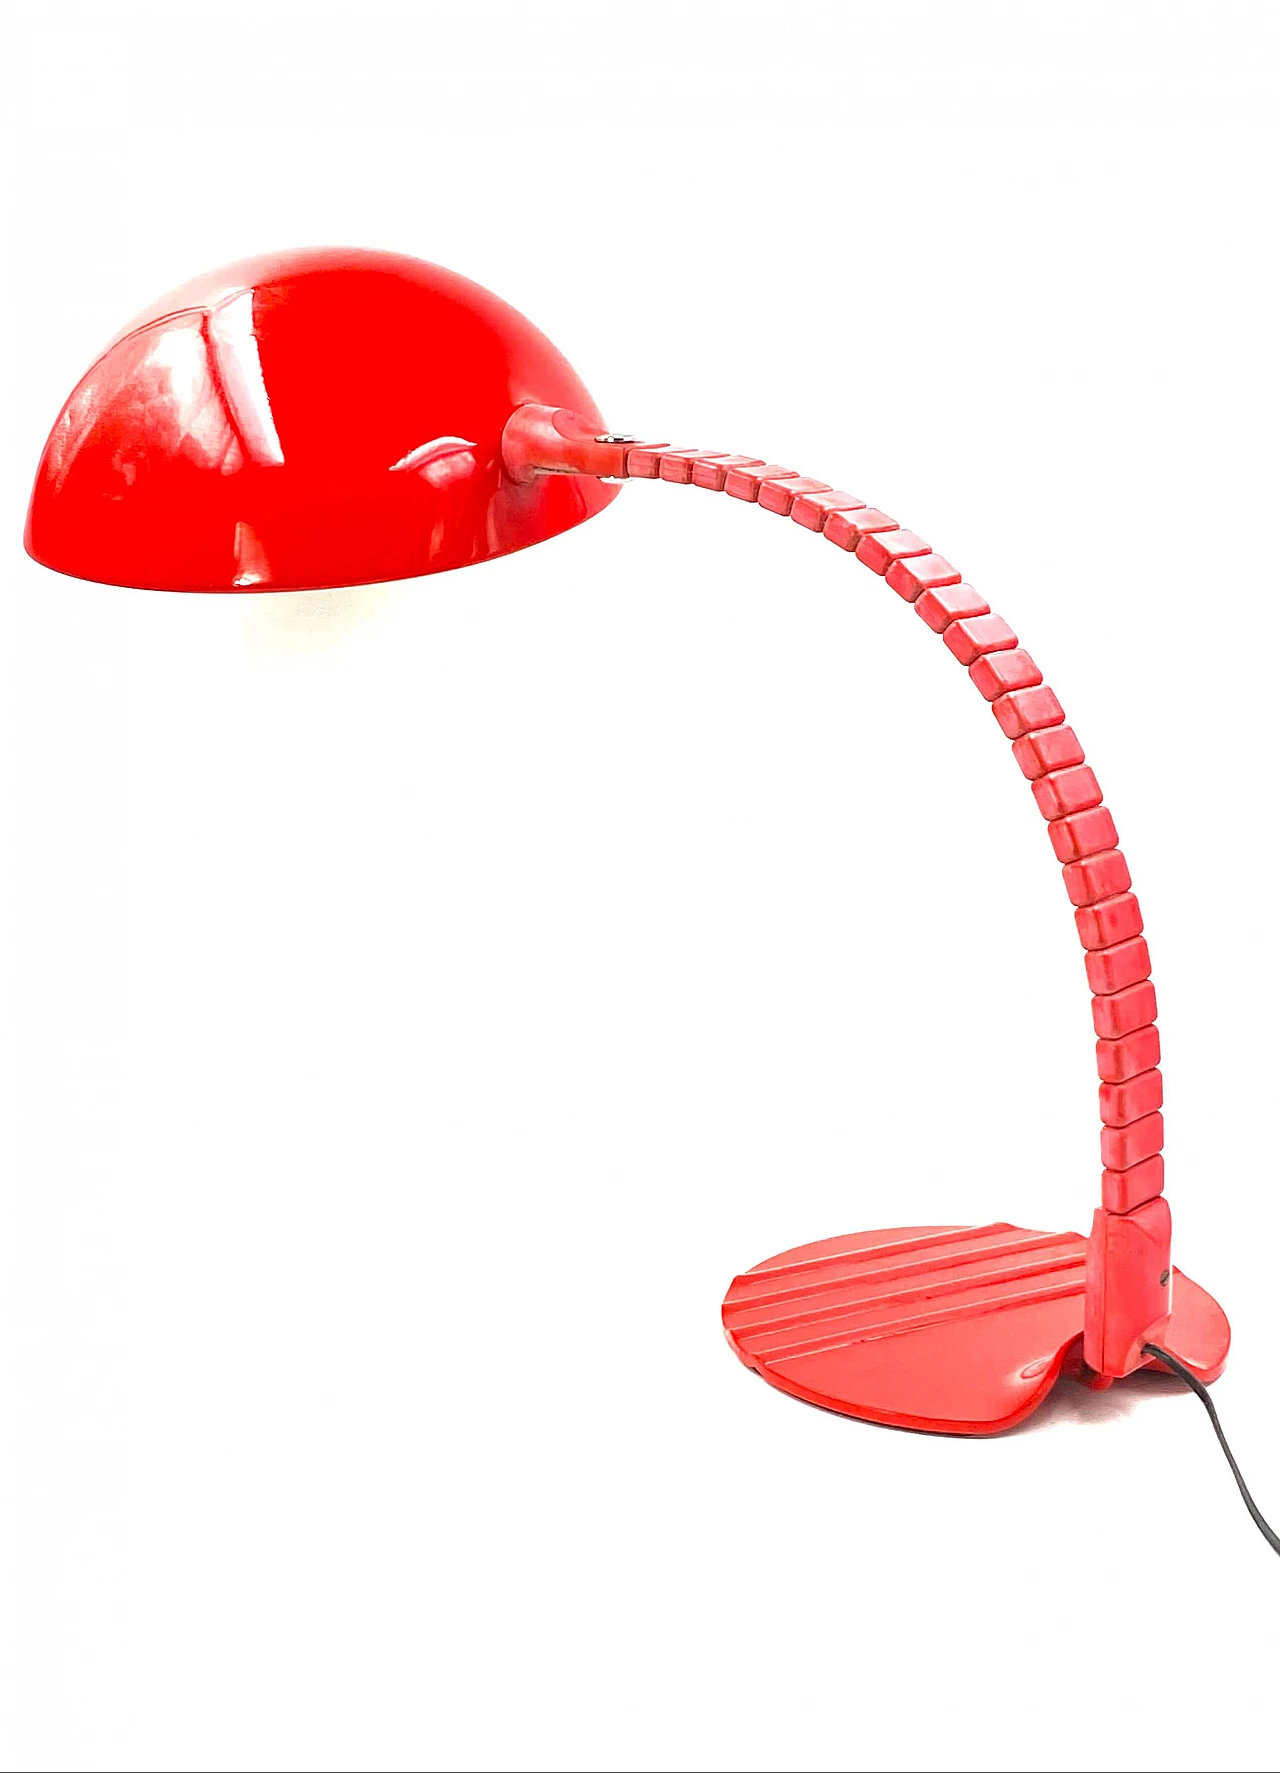 Flex Calotta 660 lamp by Elio Martinelli, 1970s 1330699